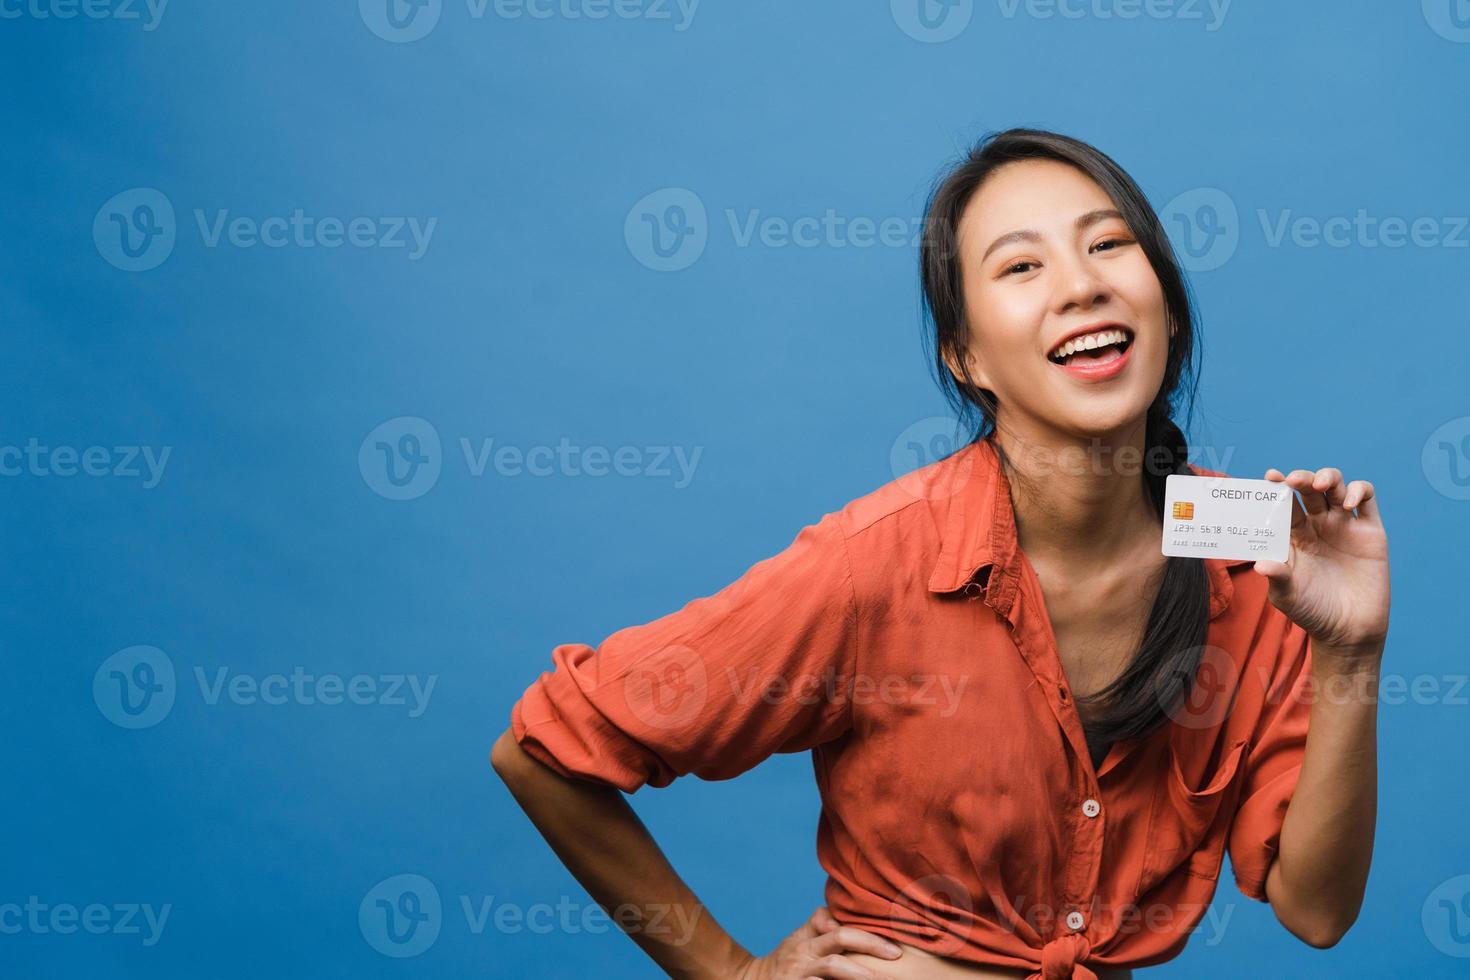 jeune femme asiatique montre une carte bancaire de crédit avec une expression positive, sourit largement, vêtue de vêtements décontractés, se sentant heureuse et isolée sur fond bleu. concept d'expression faciale. photo